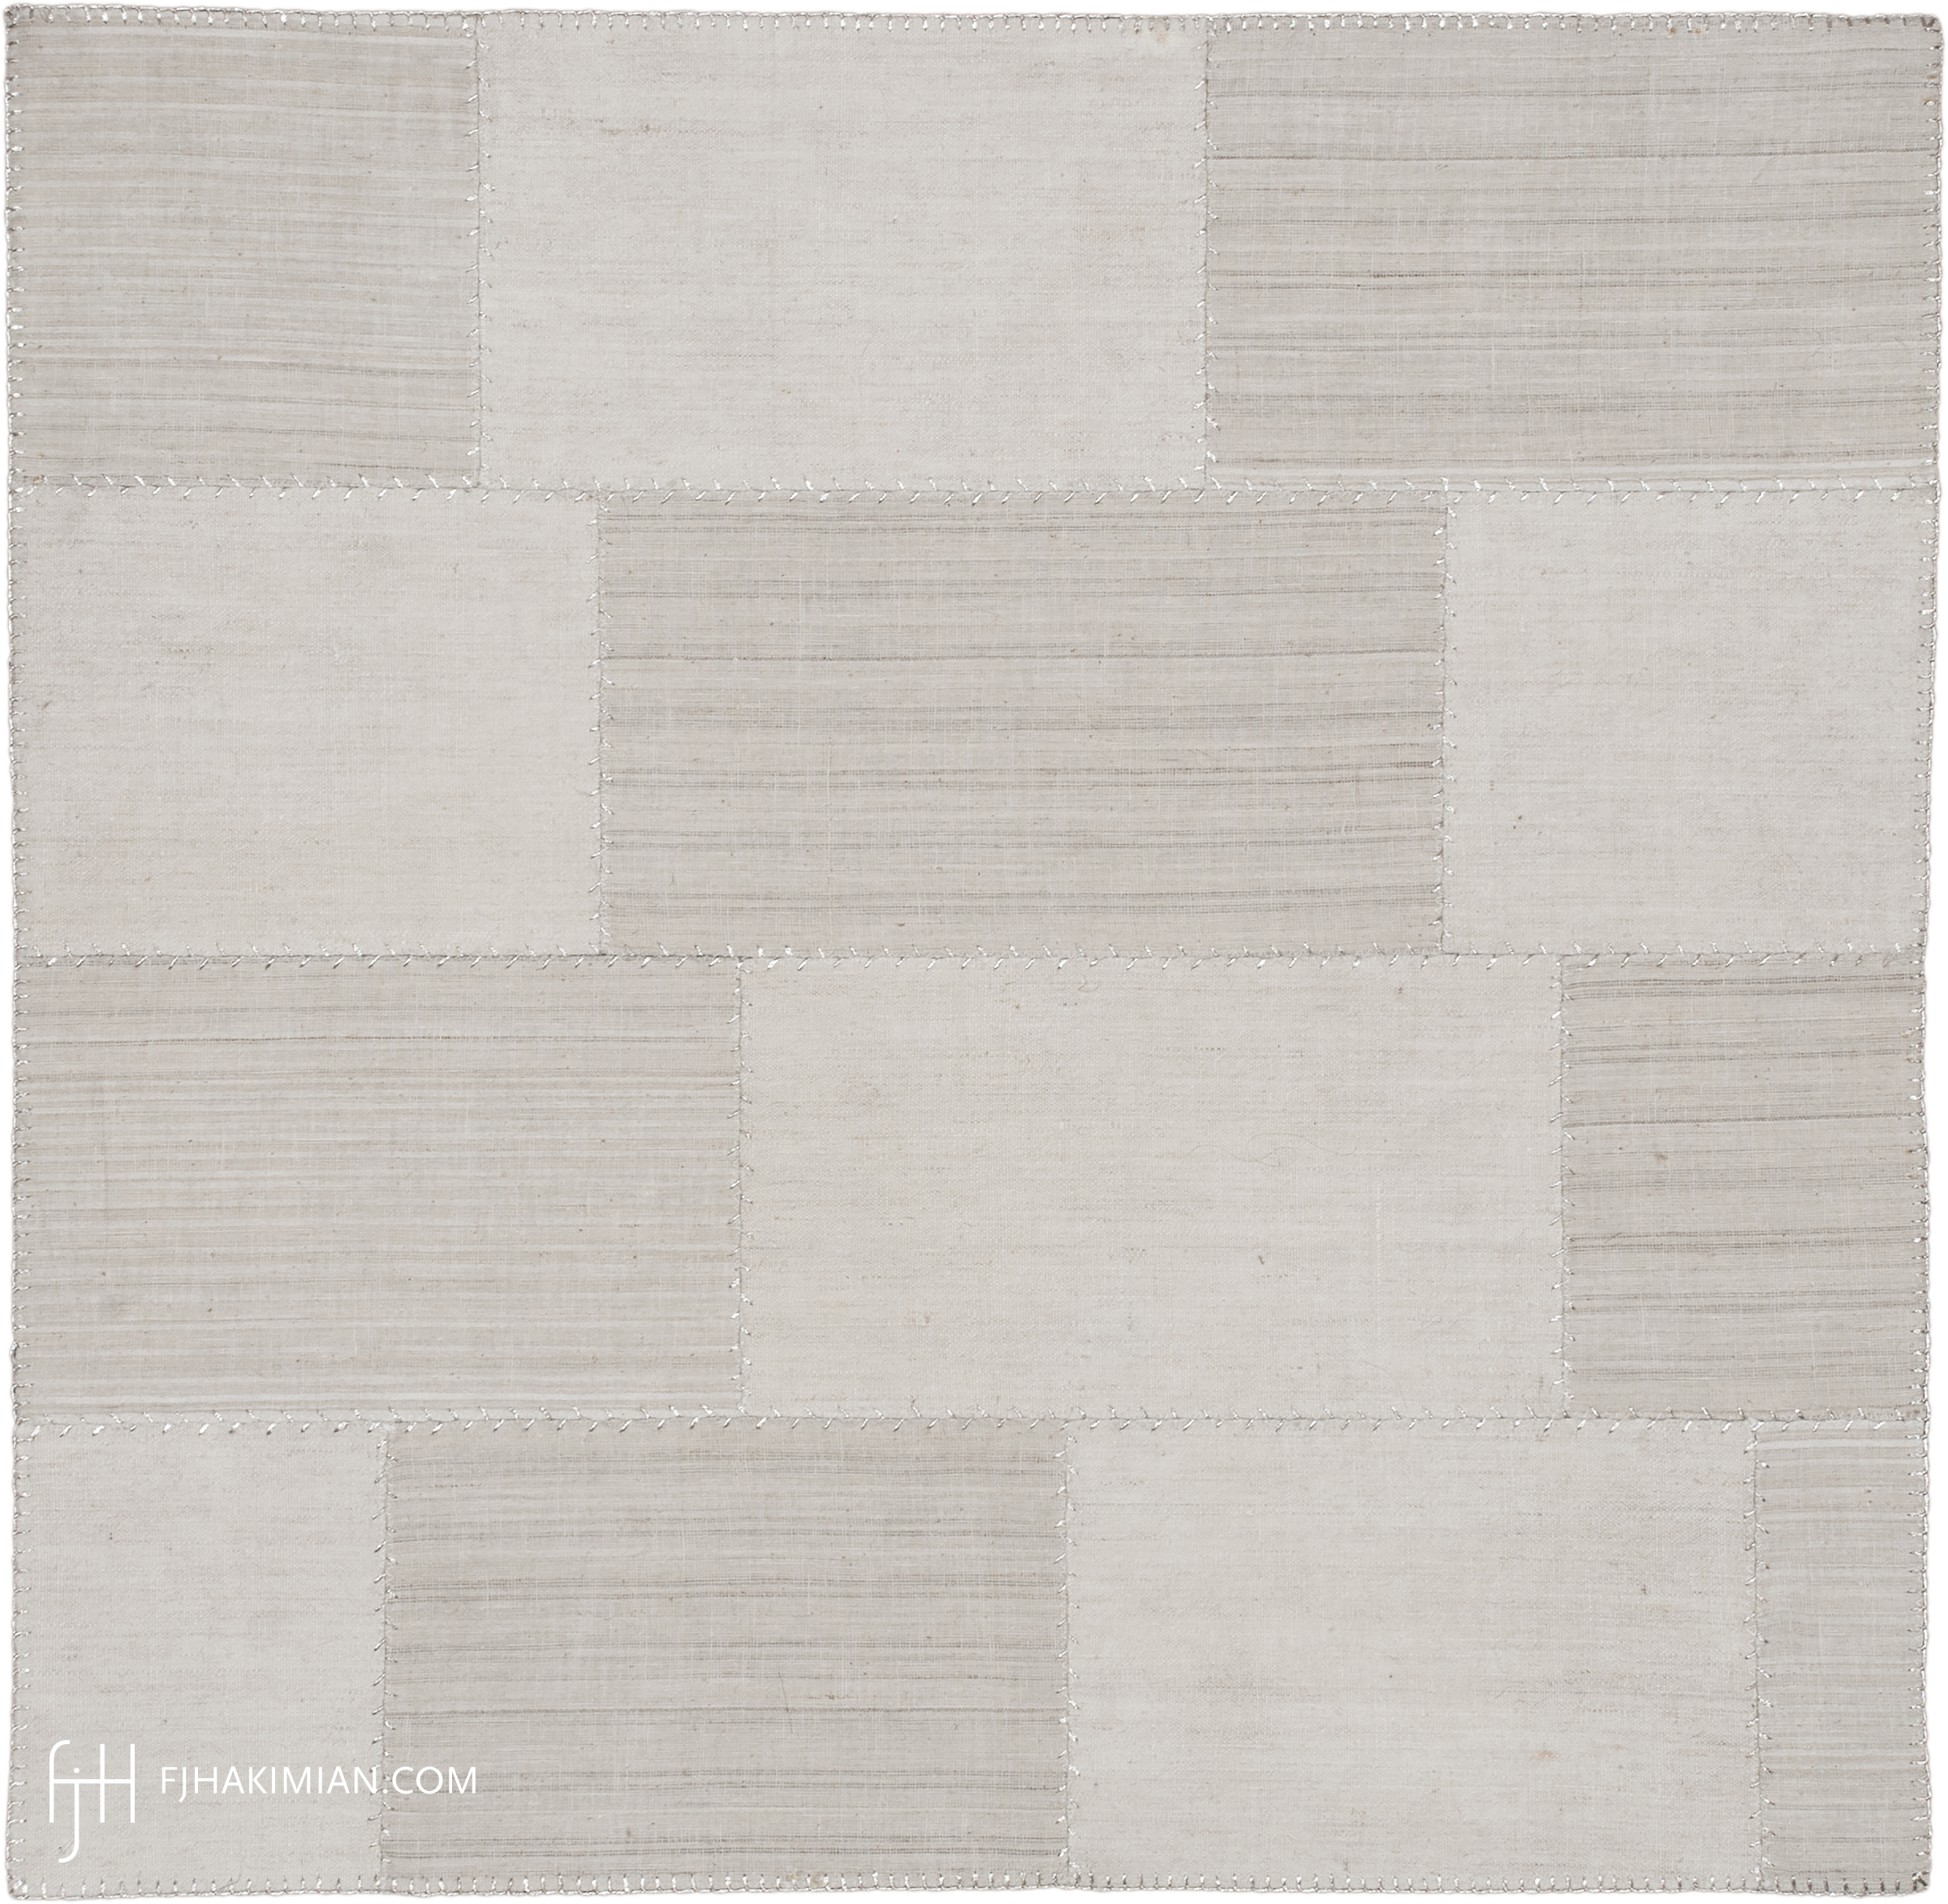 FJ Hakimian | 37426 | Custom Carpet